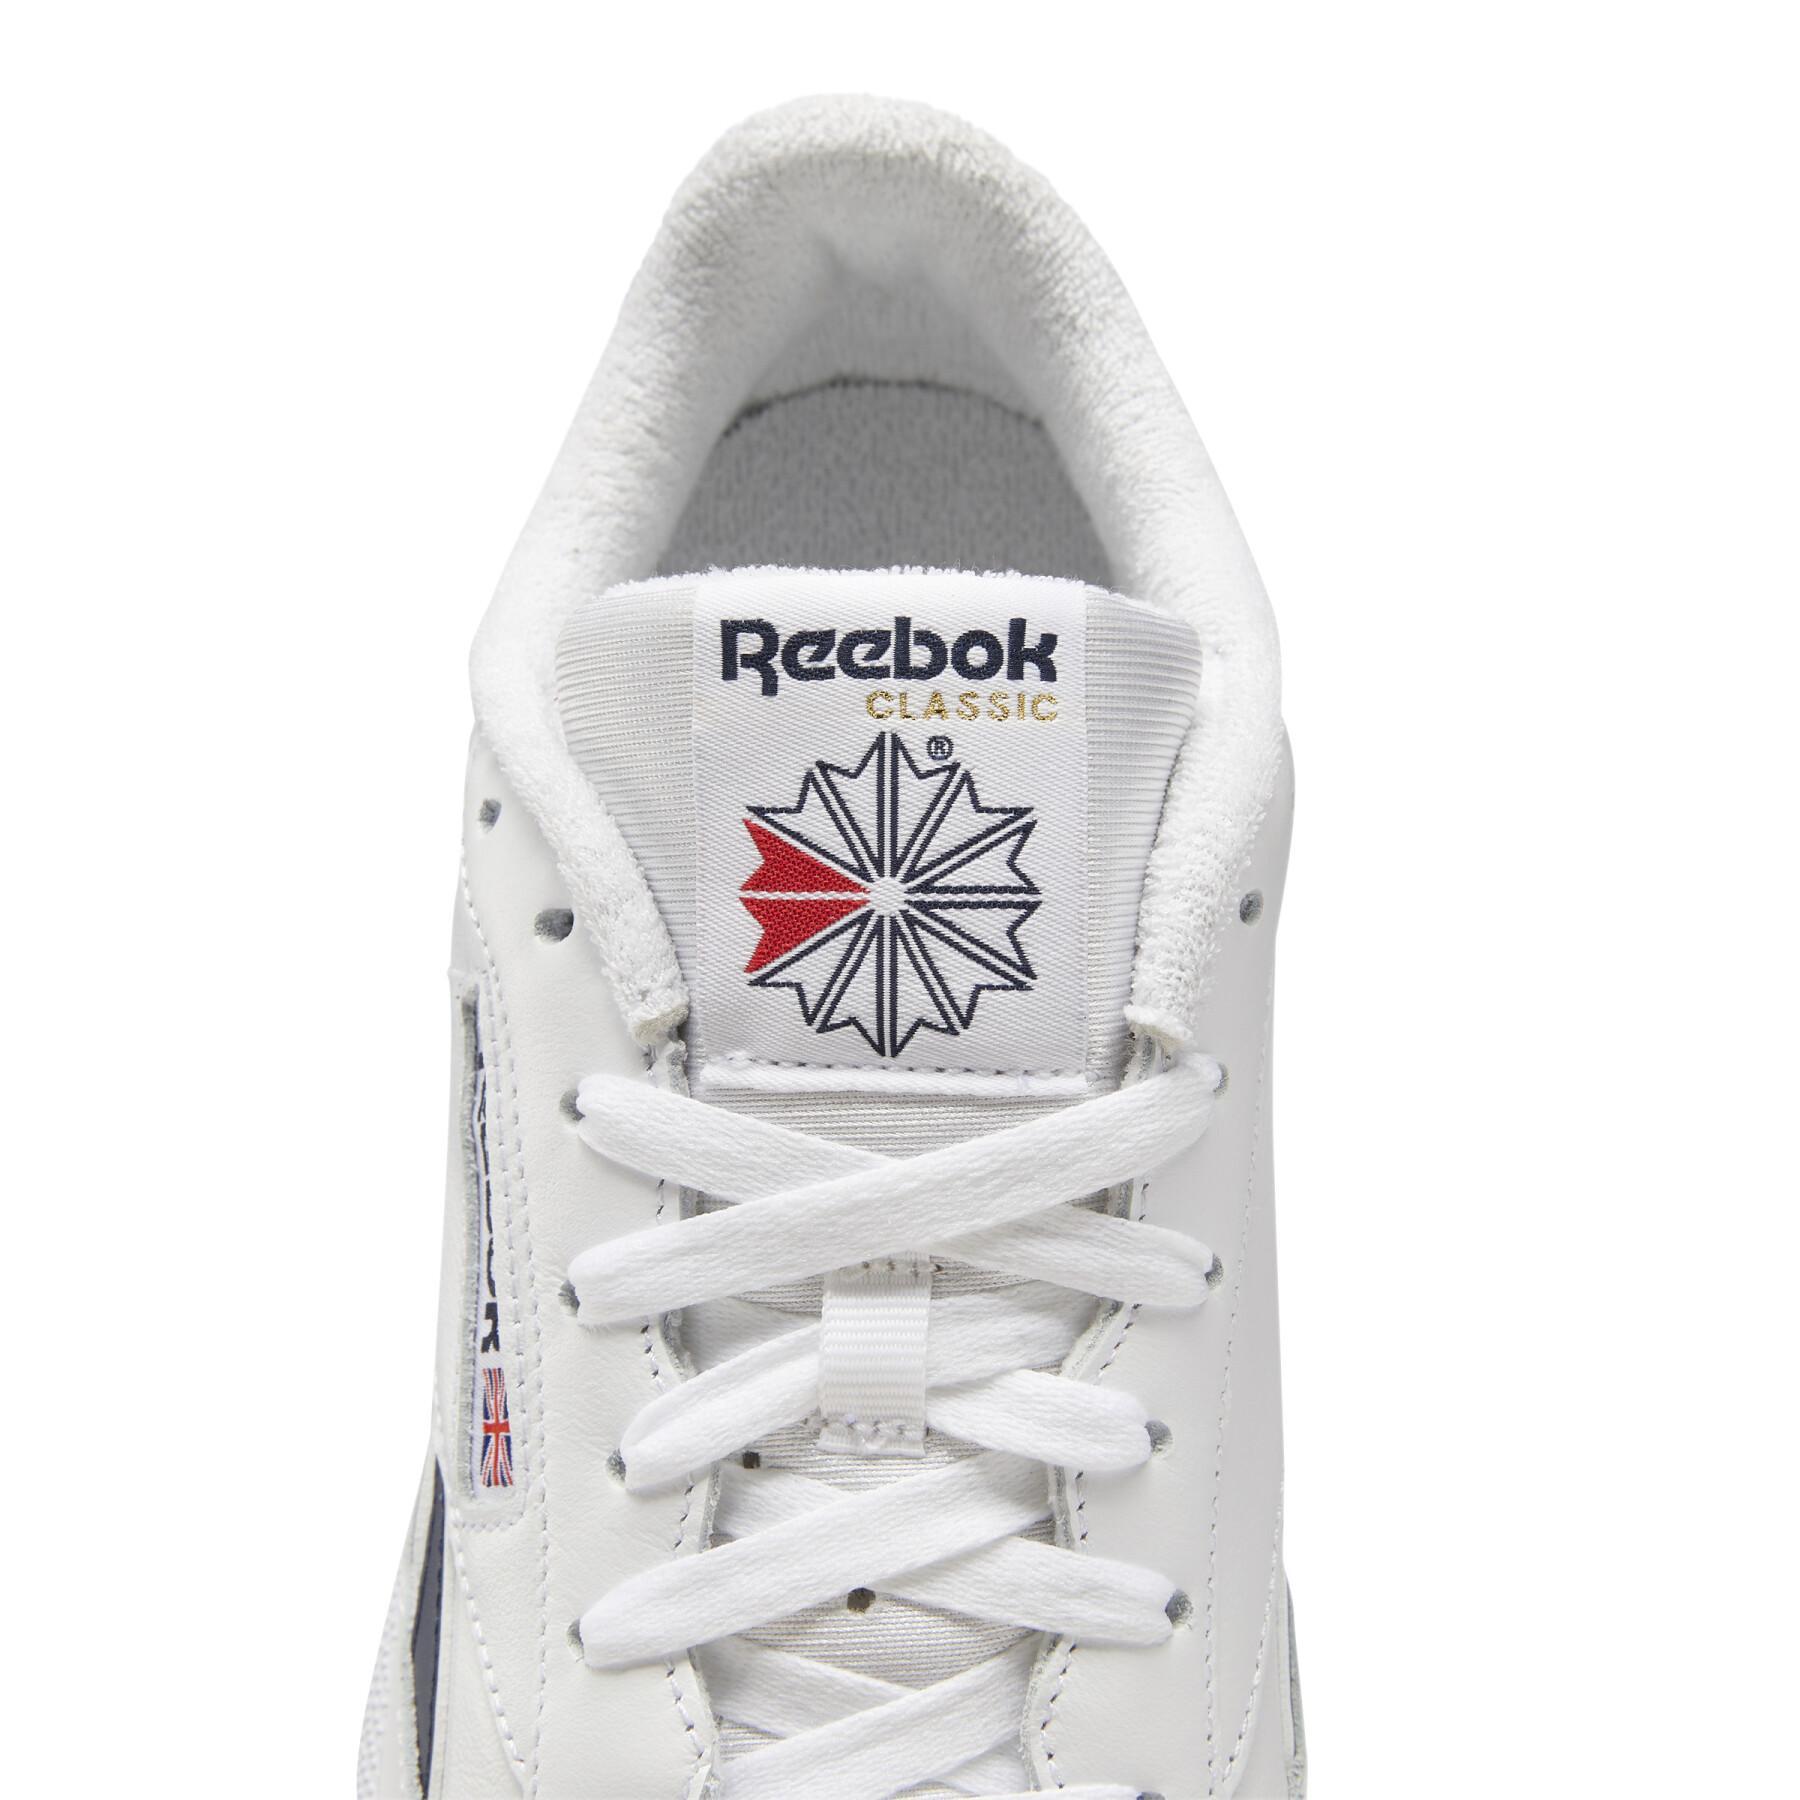 Schuhe Reebok Club C Revenge